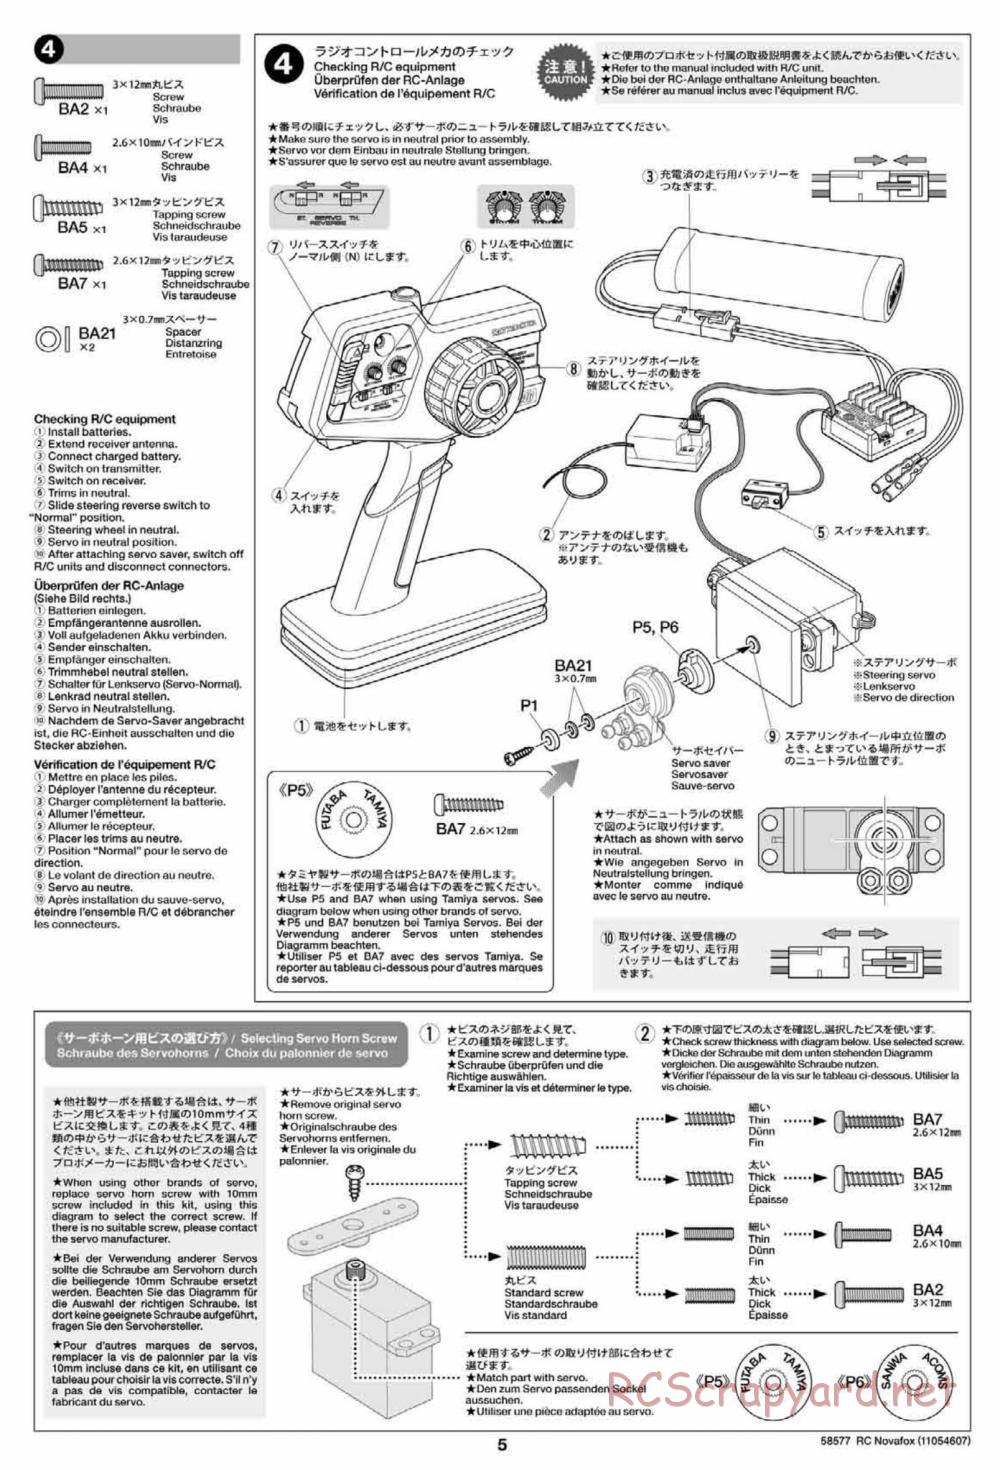 Tamiya - Novafox Chassis - Manual - Page 5